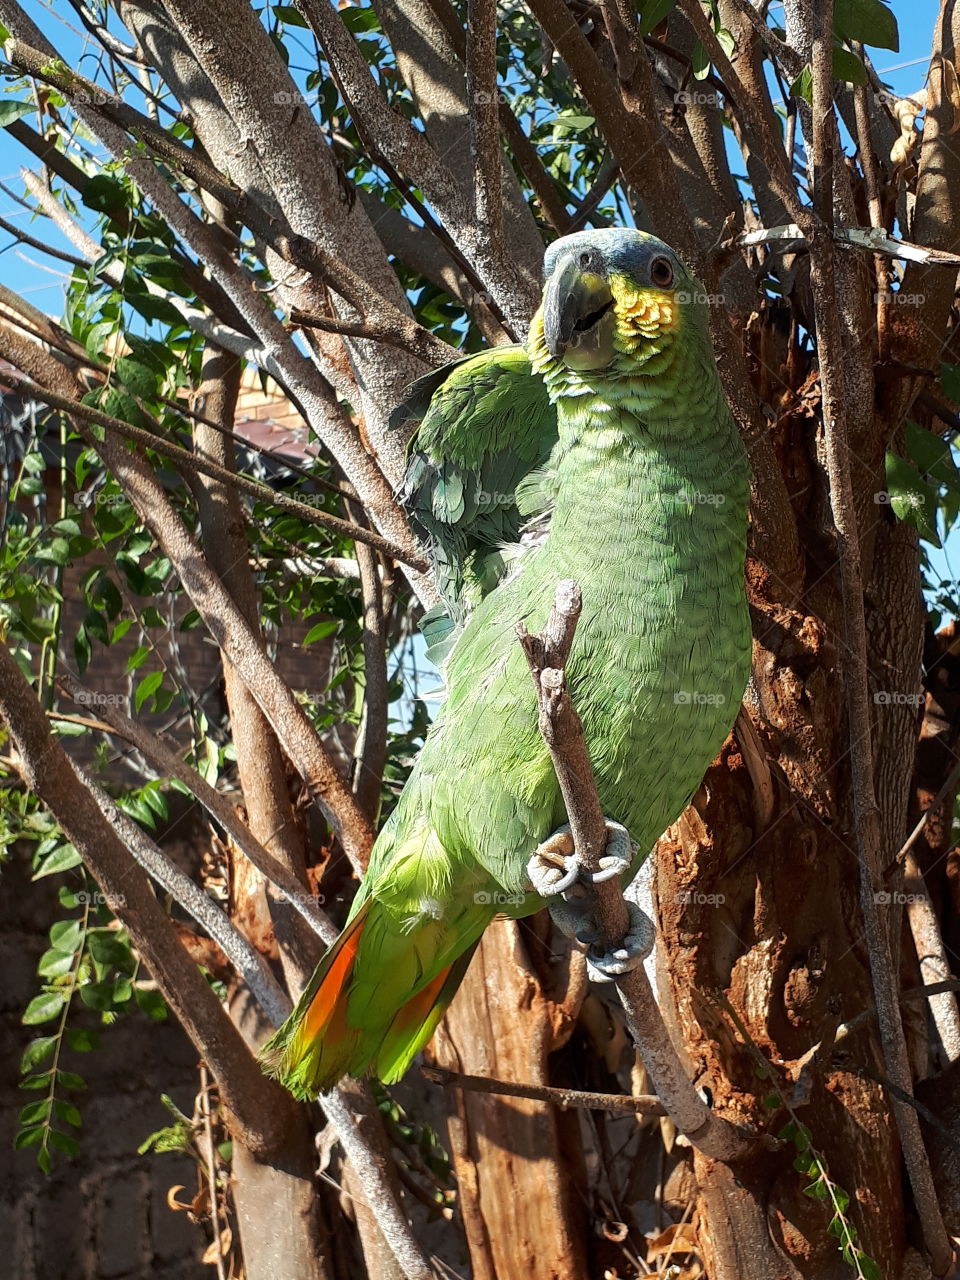 kinky amazon parrot
under the winter sun